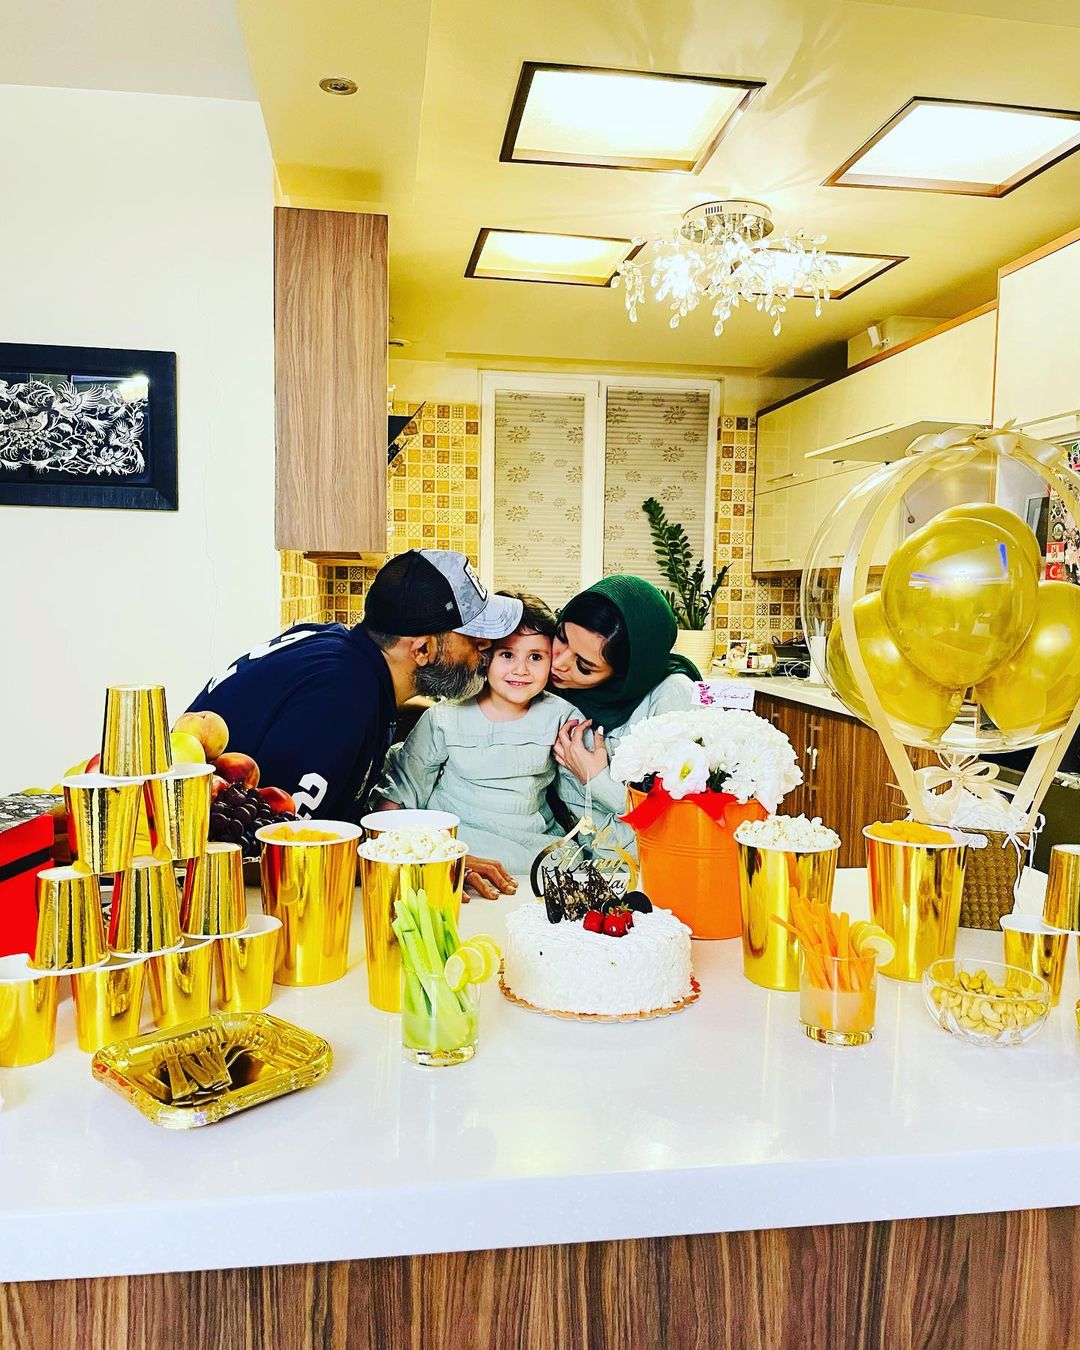 عکس های خصوصی از جشن تولد همسر مهران غفوریان در خانه اش